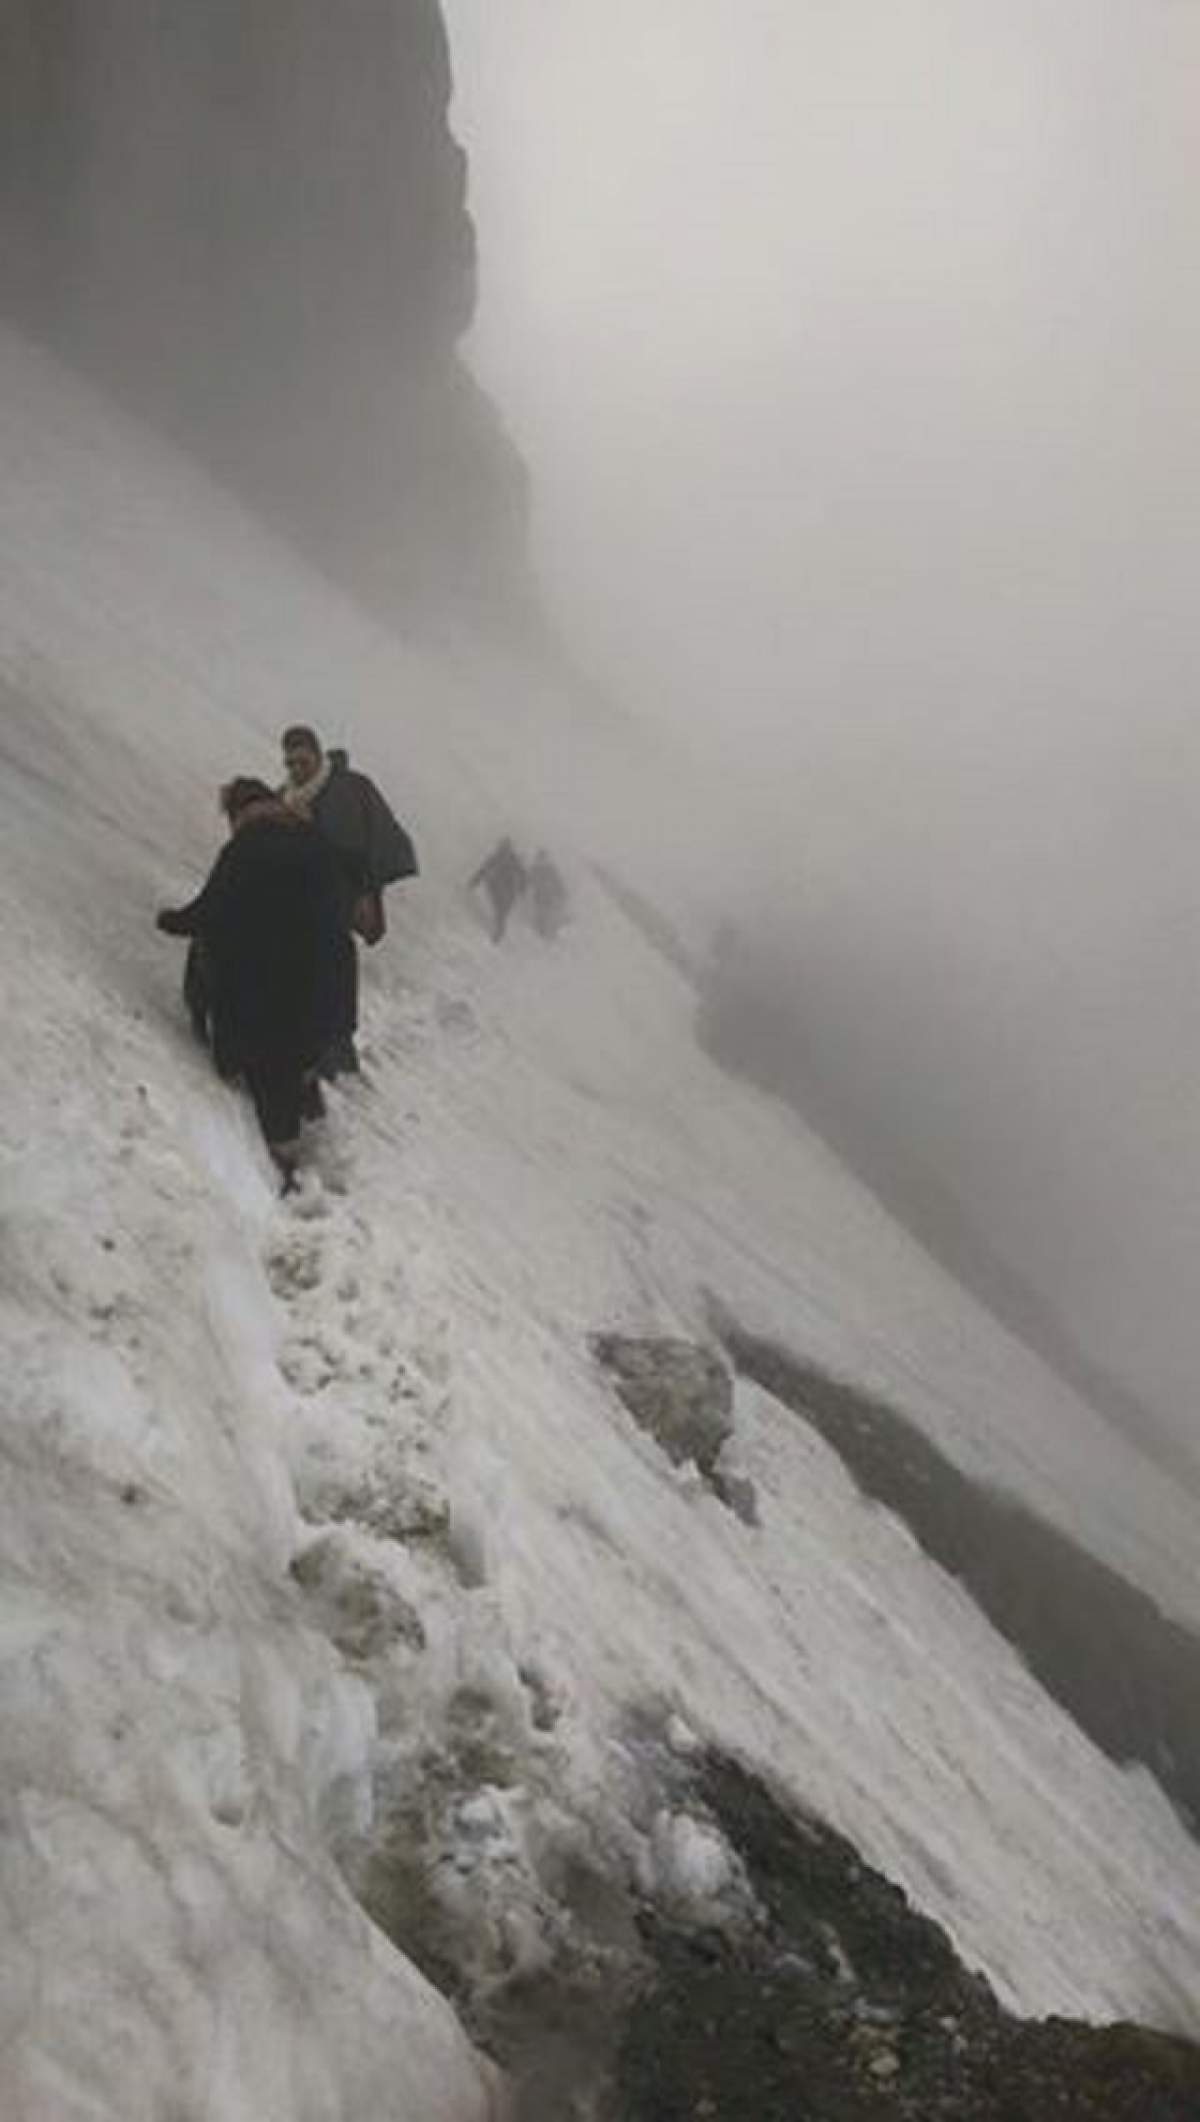 FOTO / Ozana Barabancea, la un pas de moarte în creierul munţilor! A fost abandonată de prietenă care a lăsat-o în pustiul îngheţat: "Cumplit şi traumatizant"